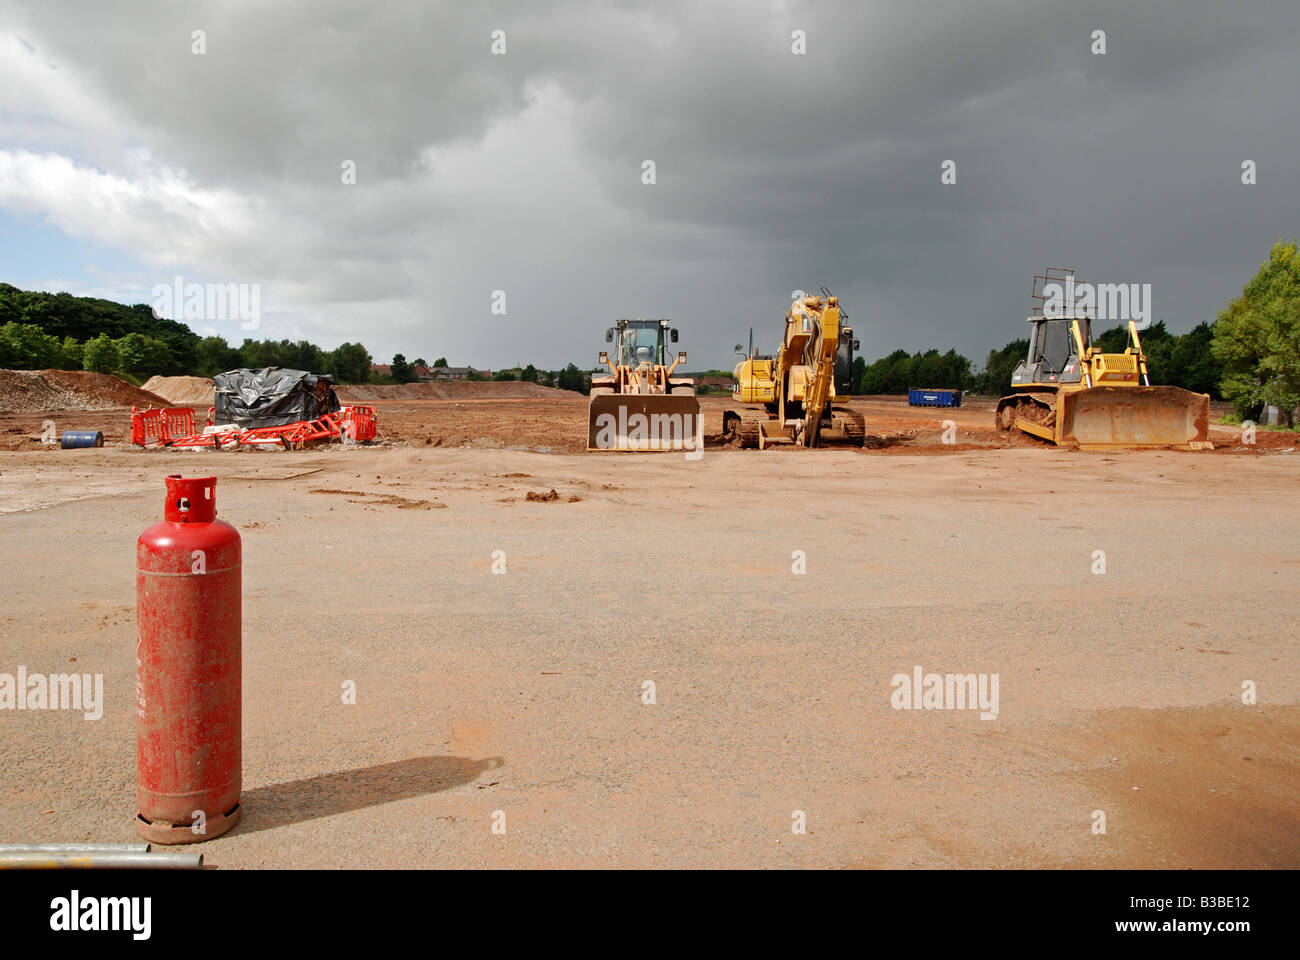 eine Brachfläche in Nürnberg, Merseyside, England, neu beräumt und bereit für den Bau zu beginnen. Stockfoto